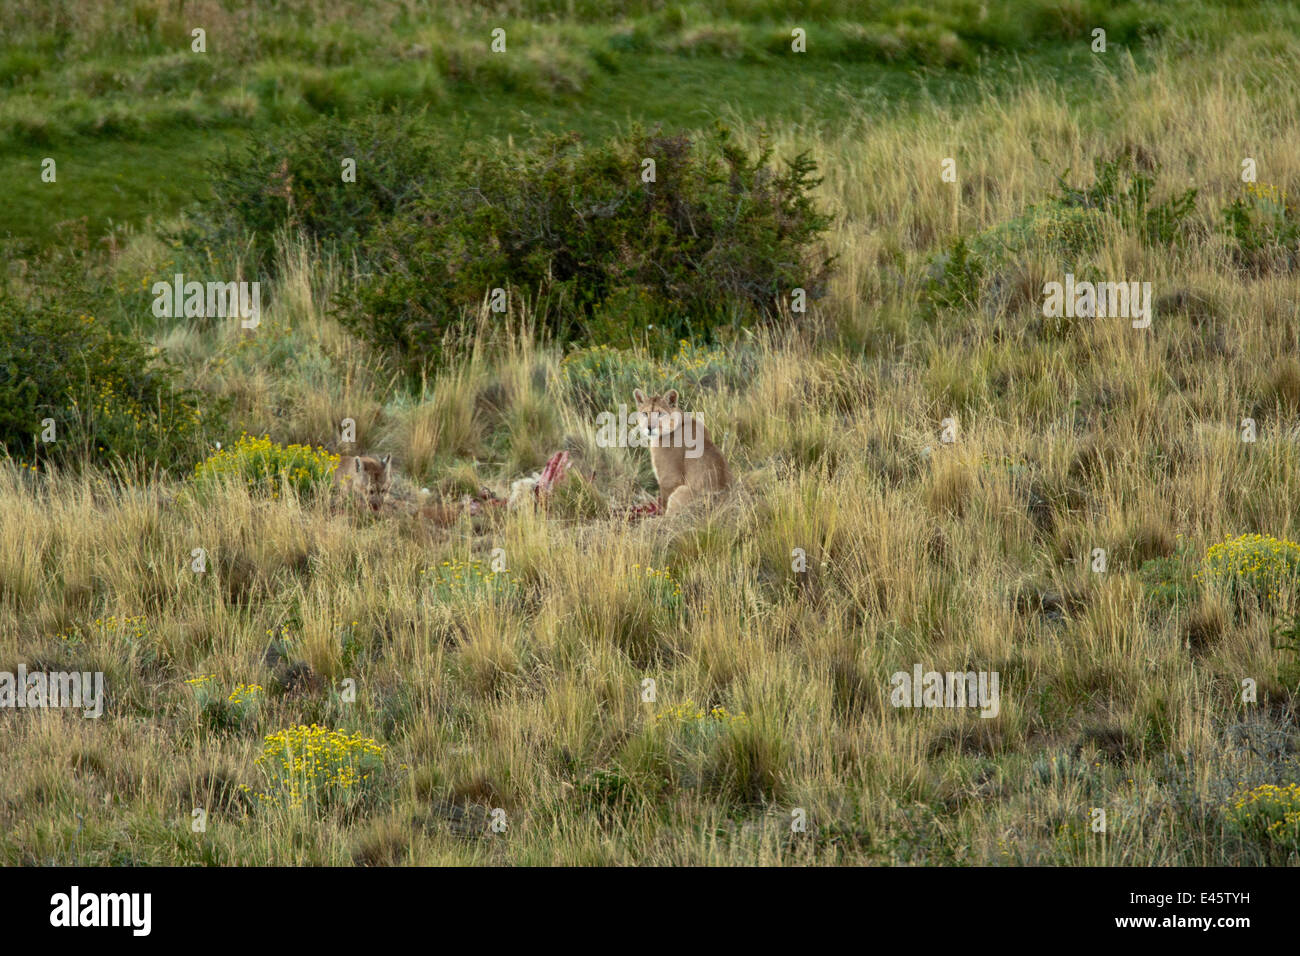 El puma (Felis concolor) alimentándose de matar, camuflada en pastizales altos, Torres del Paine, Chile, Sudamérica Foto de stock